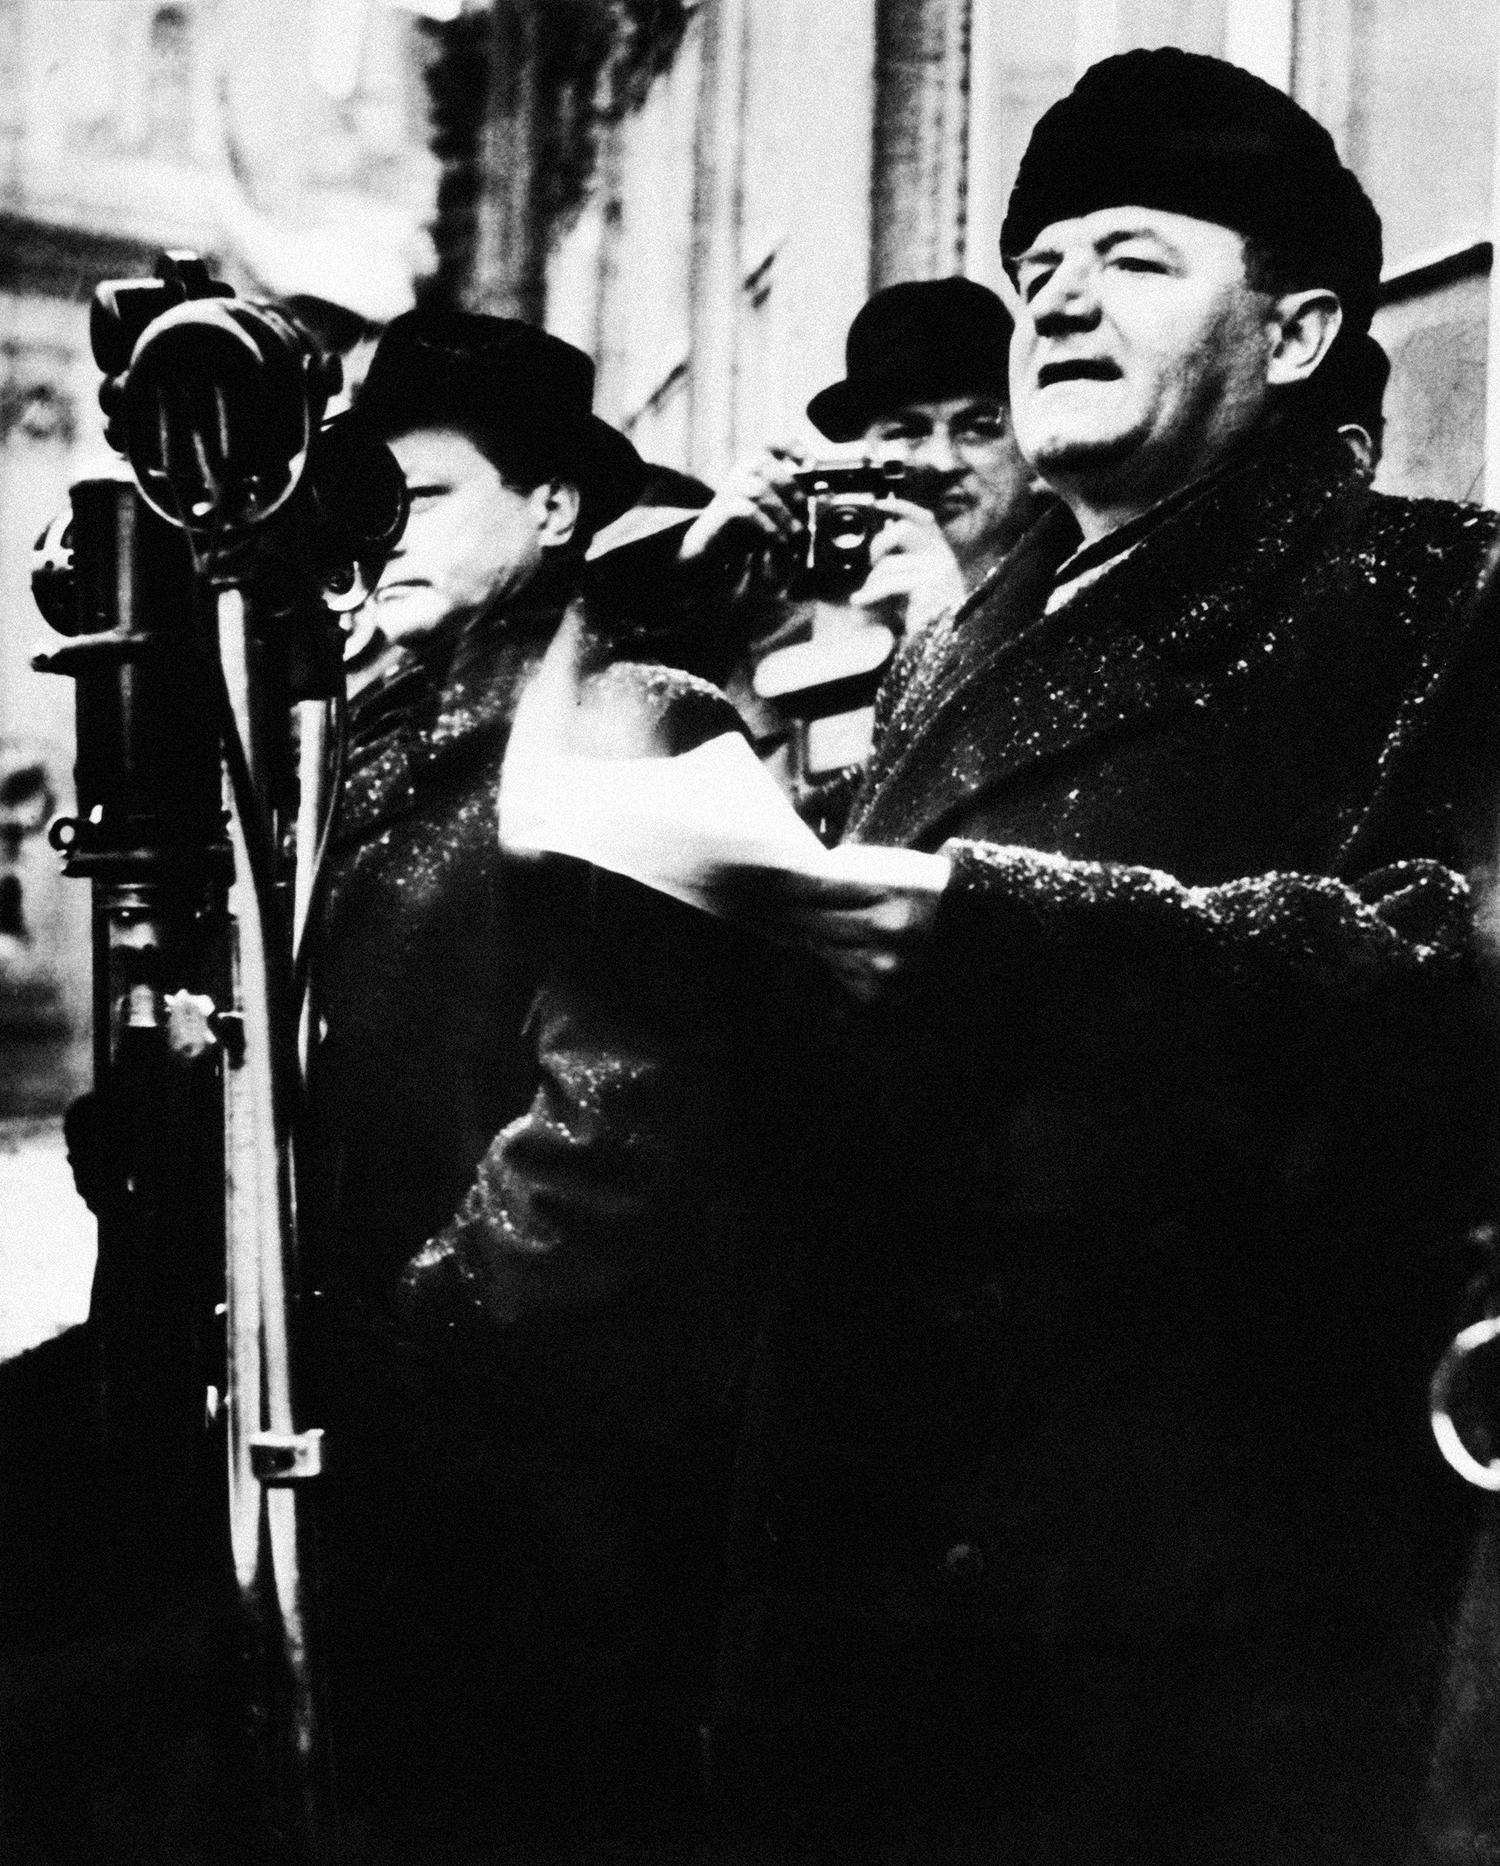 1948 Praha: Premiér Klement Gottwald pri slávnom prejave. Vedľa neho stojí jeho priateľ Vladimír Clementis, ktorého v roku 1952 po vykonštruovanom procese s Gottwaldovým súhlasom popravili a z fotografie vyretušovali.